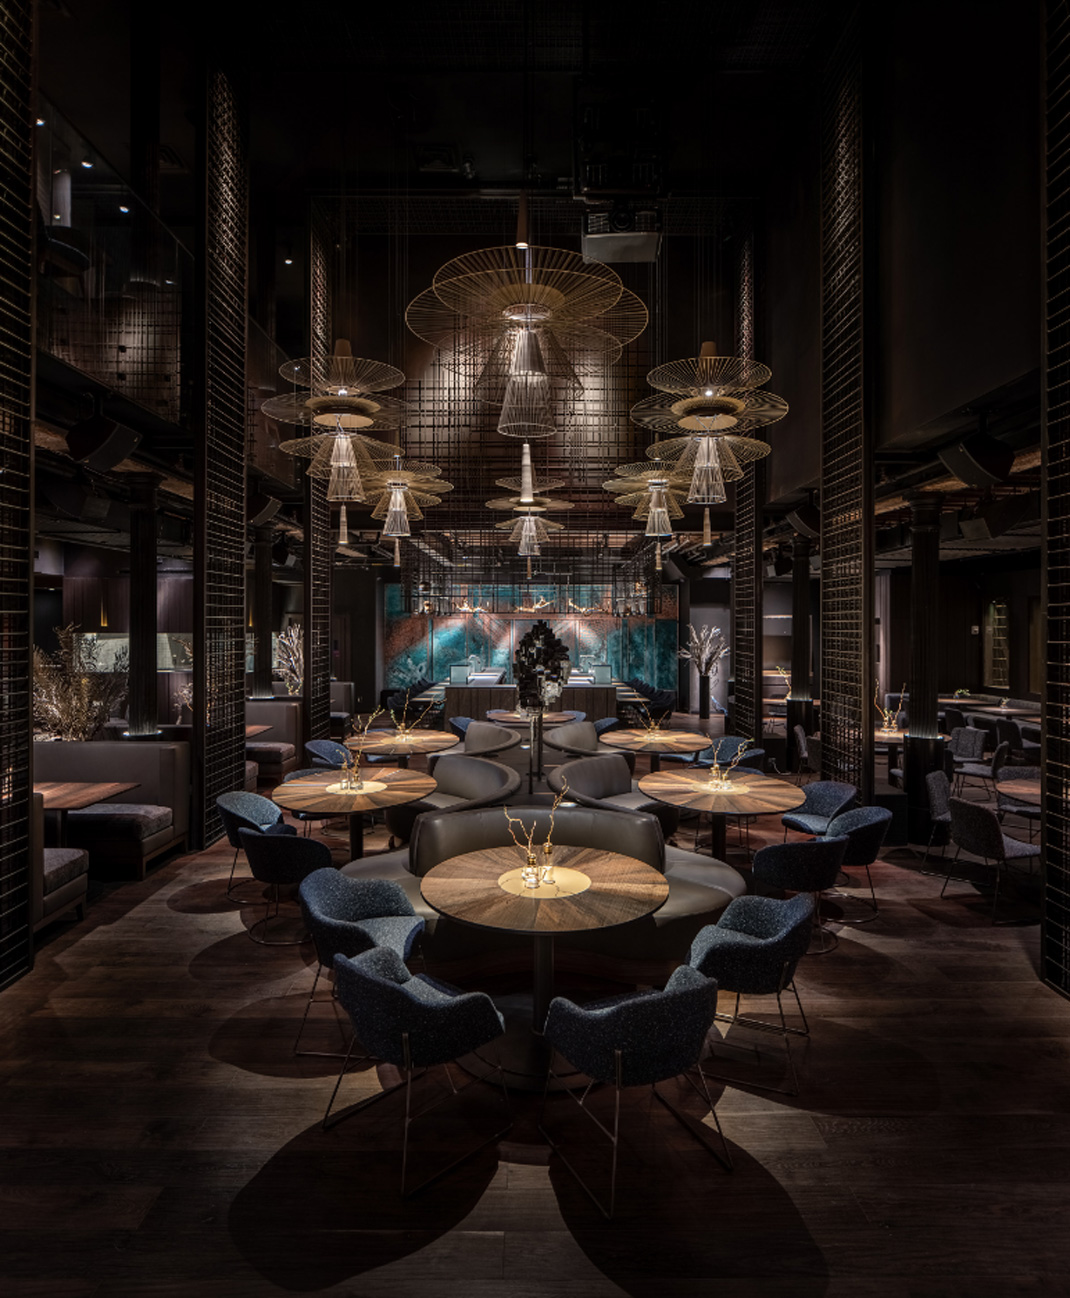 酒吧Buddha-Bar New York 纽约 酒吧 现代艺术 佛 logo设计 vi设计 空间设计